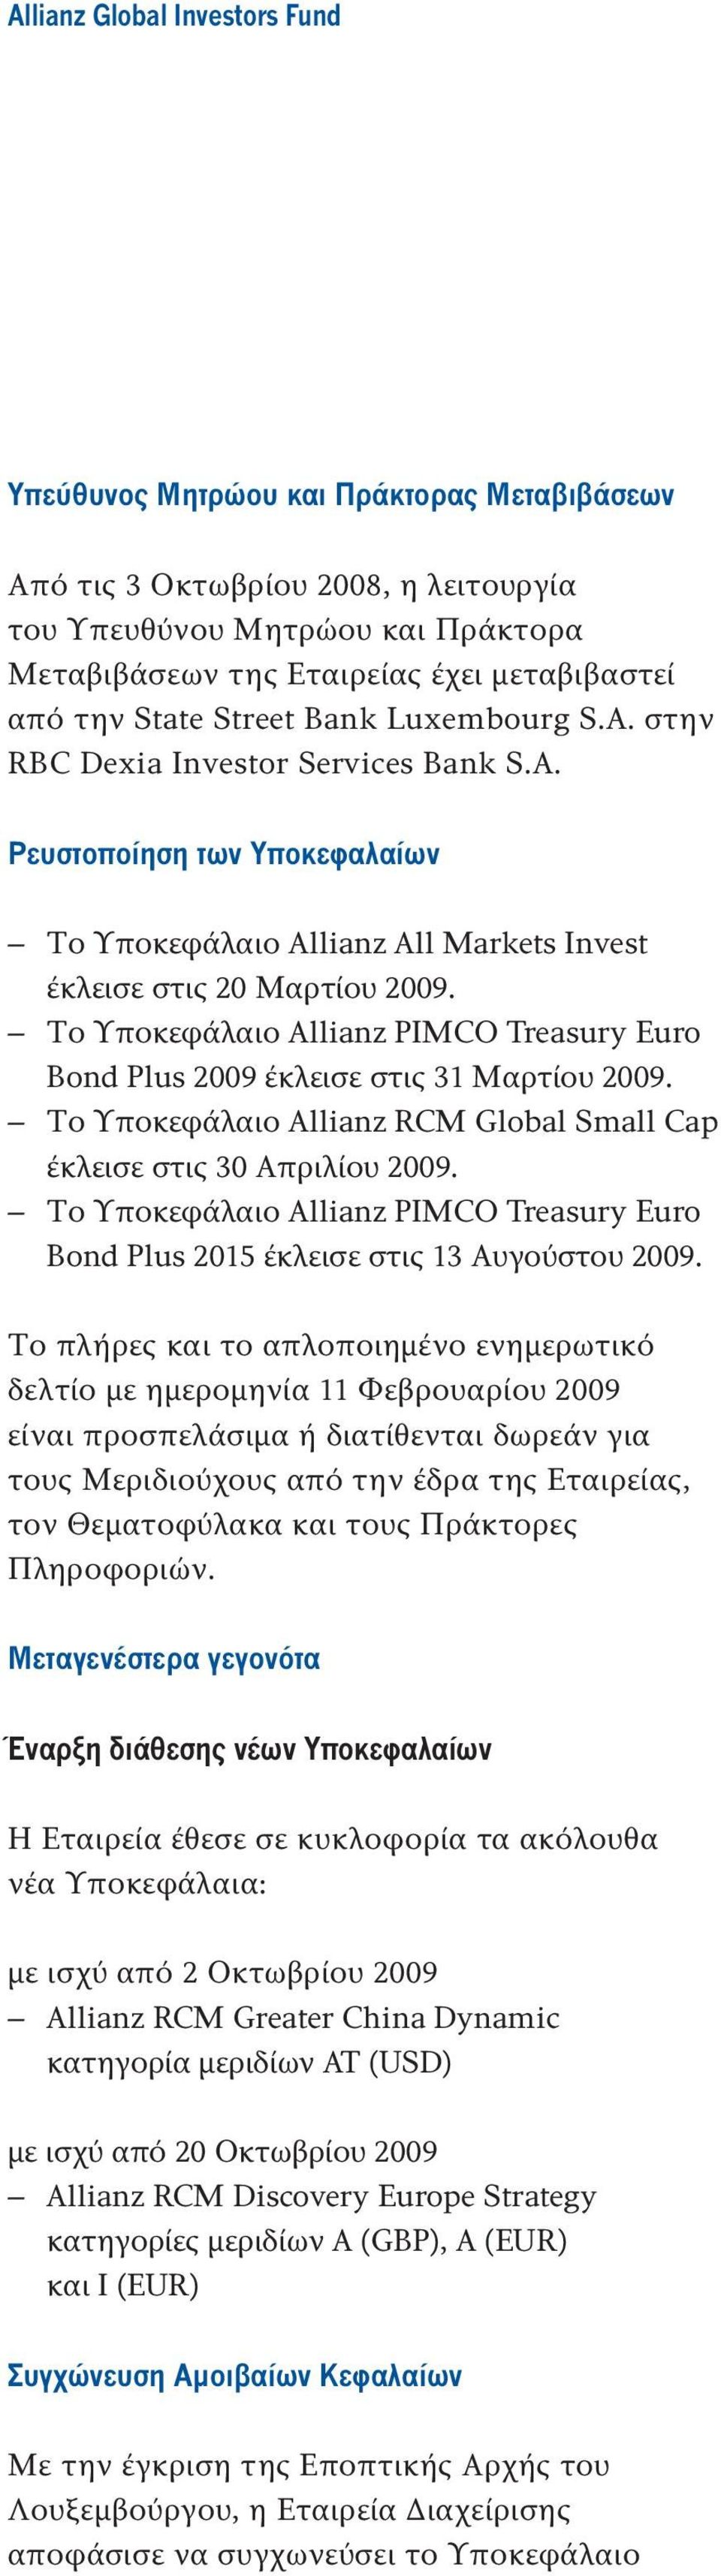 Το Υποκεφάλαιο Allianz PIMCO Treasury Euro Bond Plus 2009 έκλεισε στις 31 Μαρτίου 2009. Το Υποκεφάλαιο Allianz RCM Global Small Cap έκλεισε στις 30 Απριλίου 2009.